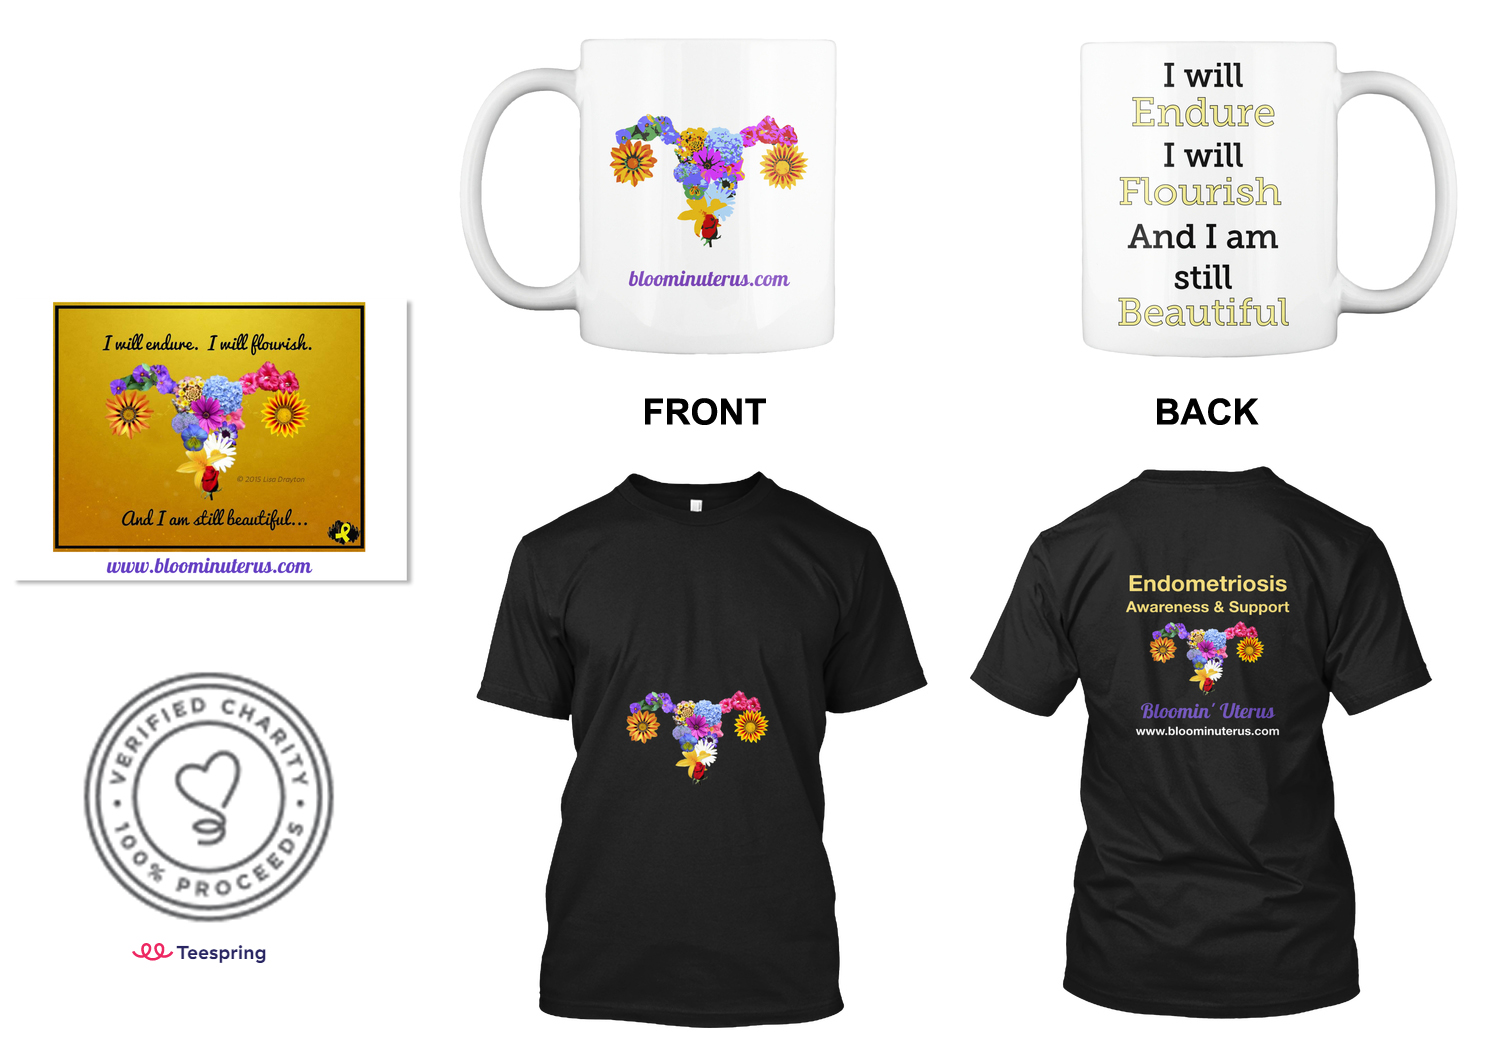 Bloomin' Uterus stickers, mugs, and t-shirts